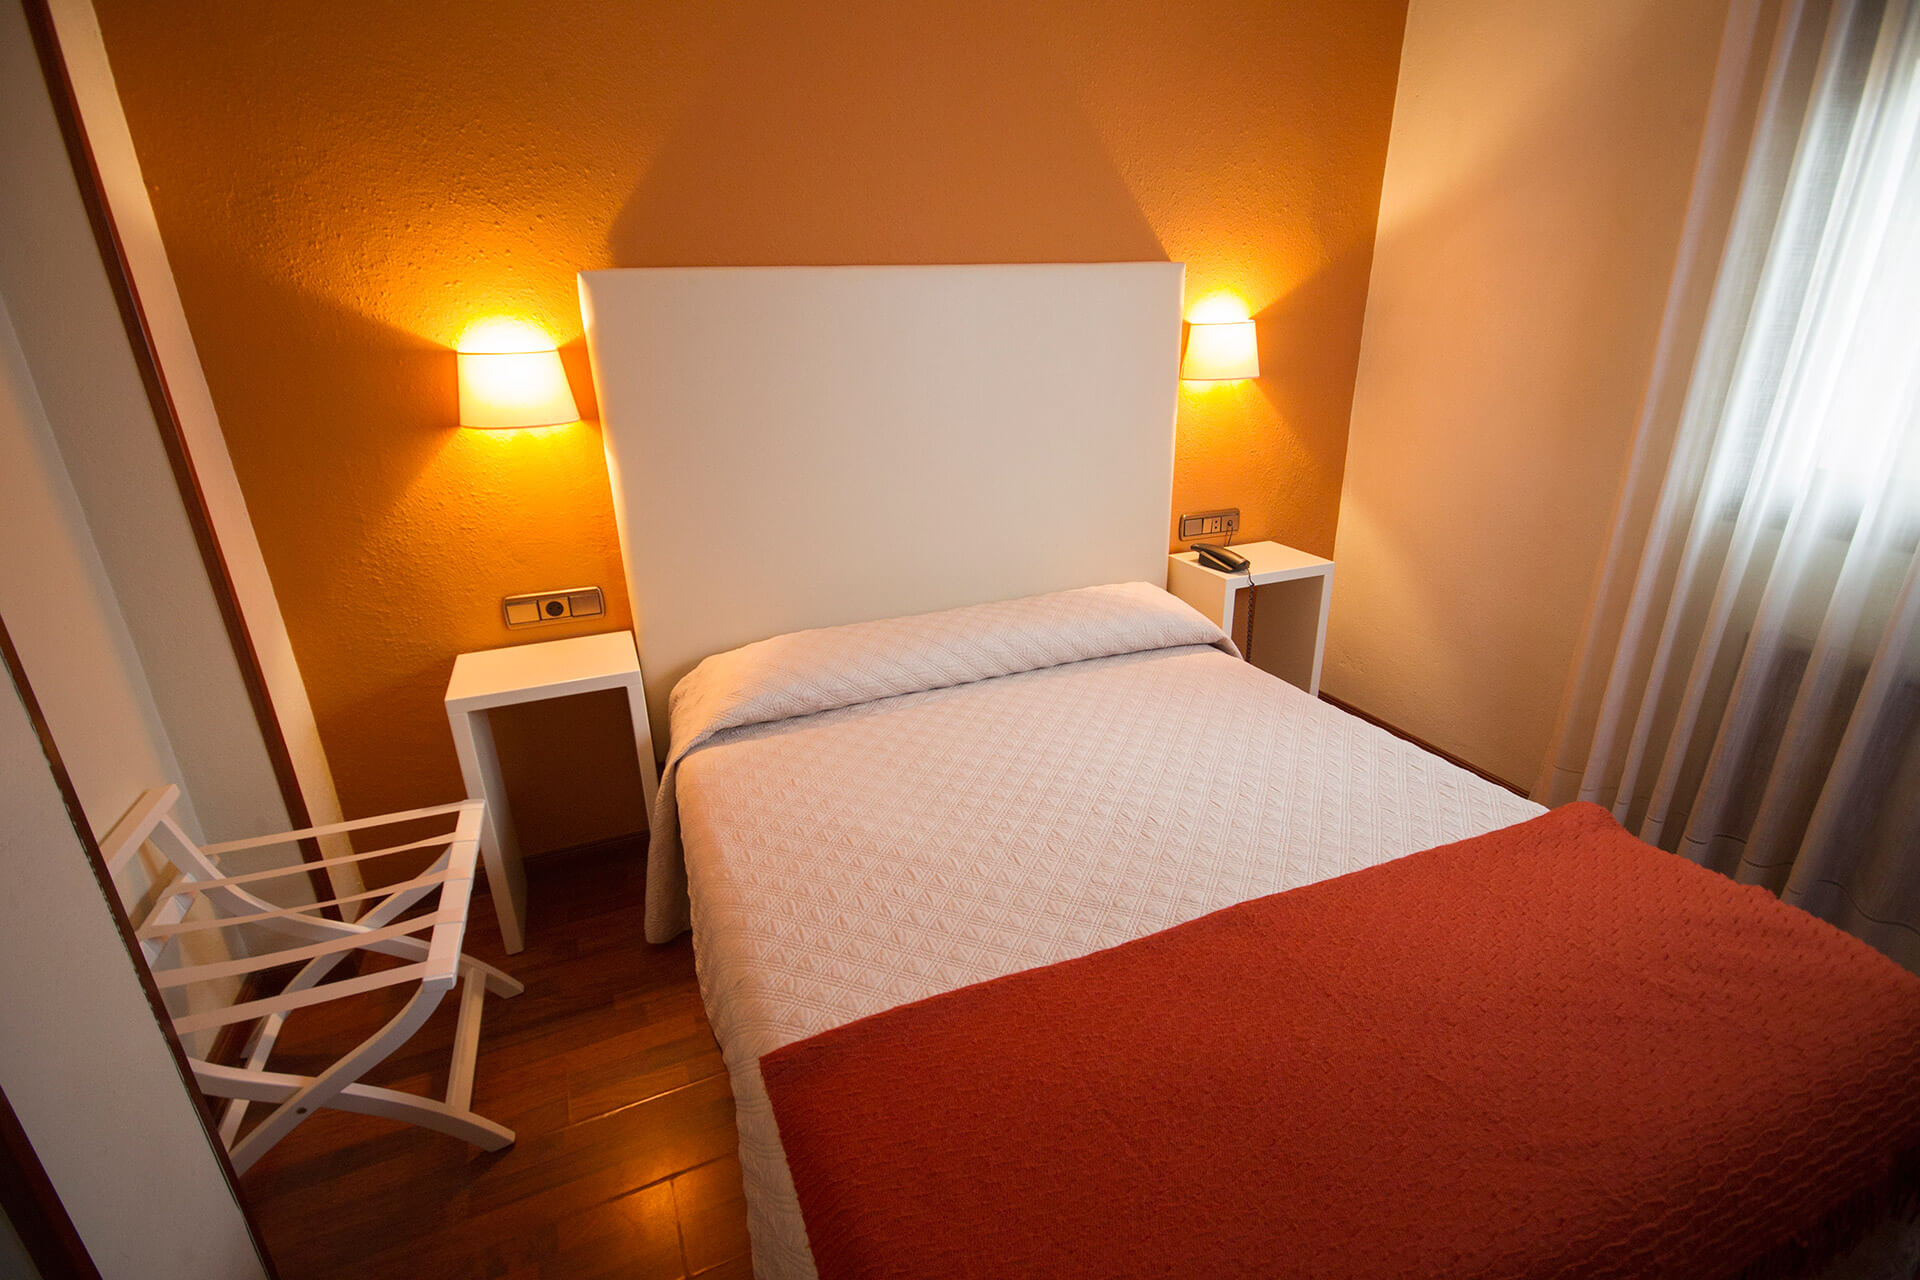 hostal-ovetense-cama-individual-asturias-mesilla-cortina.jpg